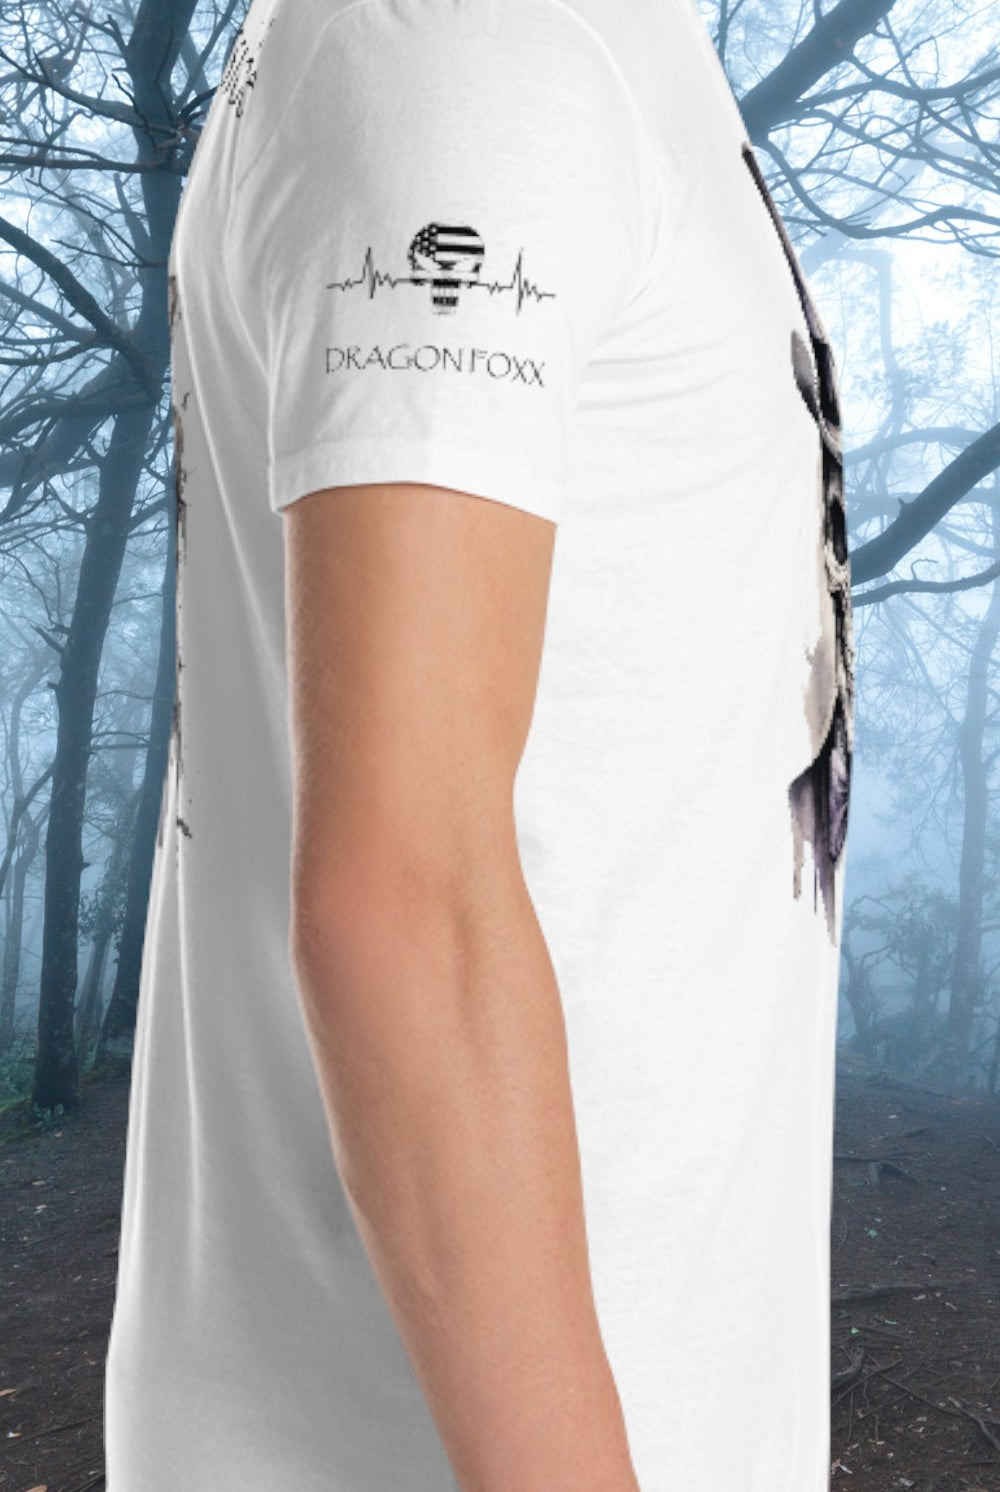 Dead Inside - Men's White Graphic T-Shirt - Dead Inside - Men's White Graphic T-Shirt - DRAGON FOXX™ - 4336636_473 - S - White - Dead Inside - Men's White Graphic T-Shirt - Dead Inside T-Shirt - Dragon Foxx™